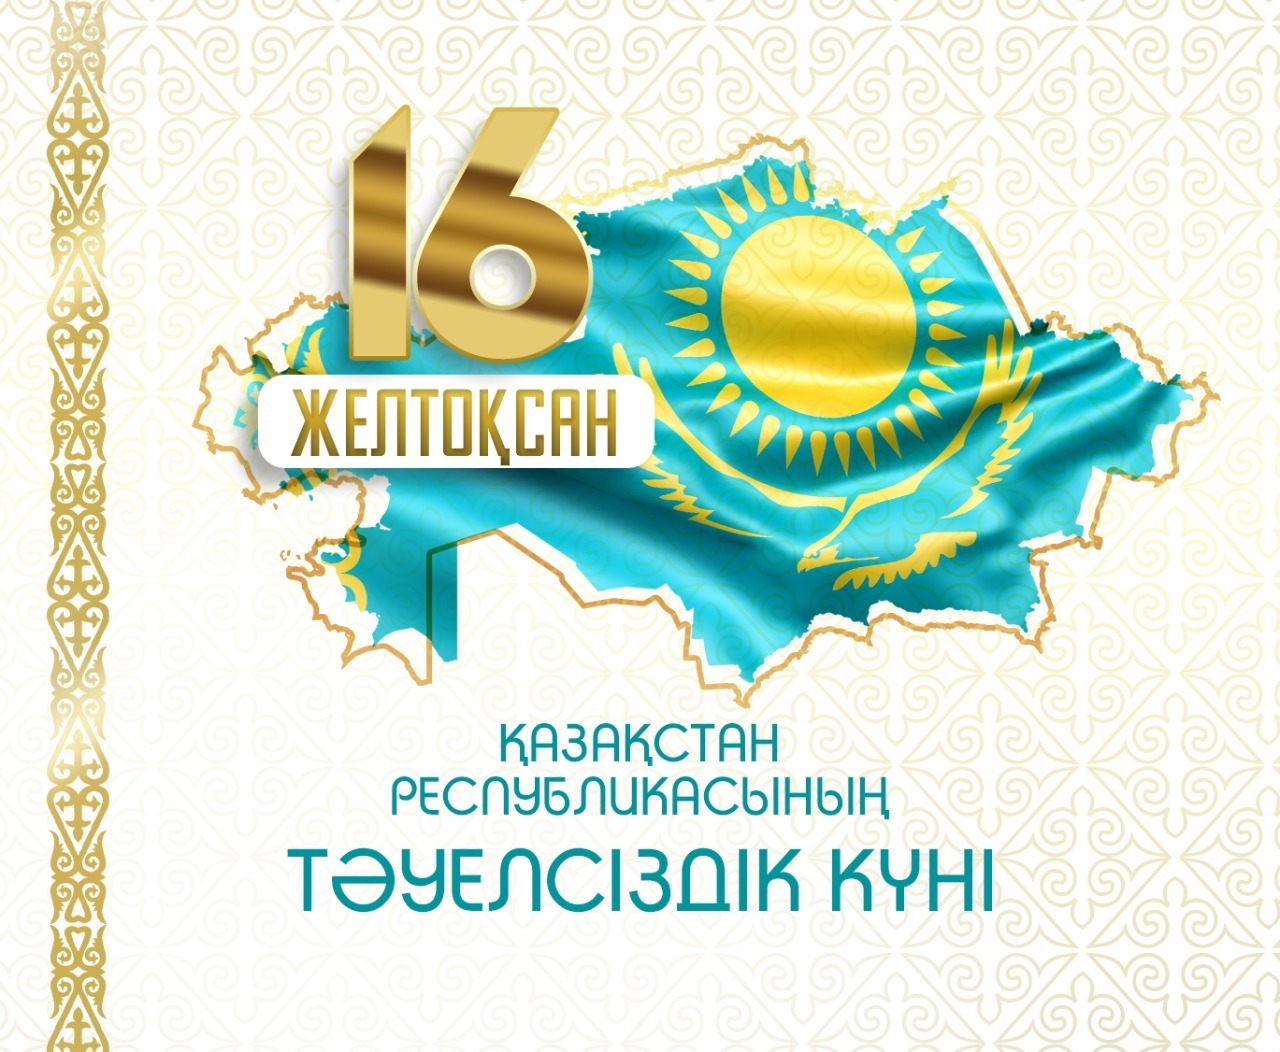 Астанада Тәуелсіздік күніне орай қандай іс-шаралар өтеді